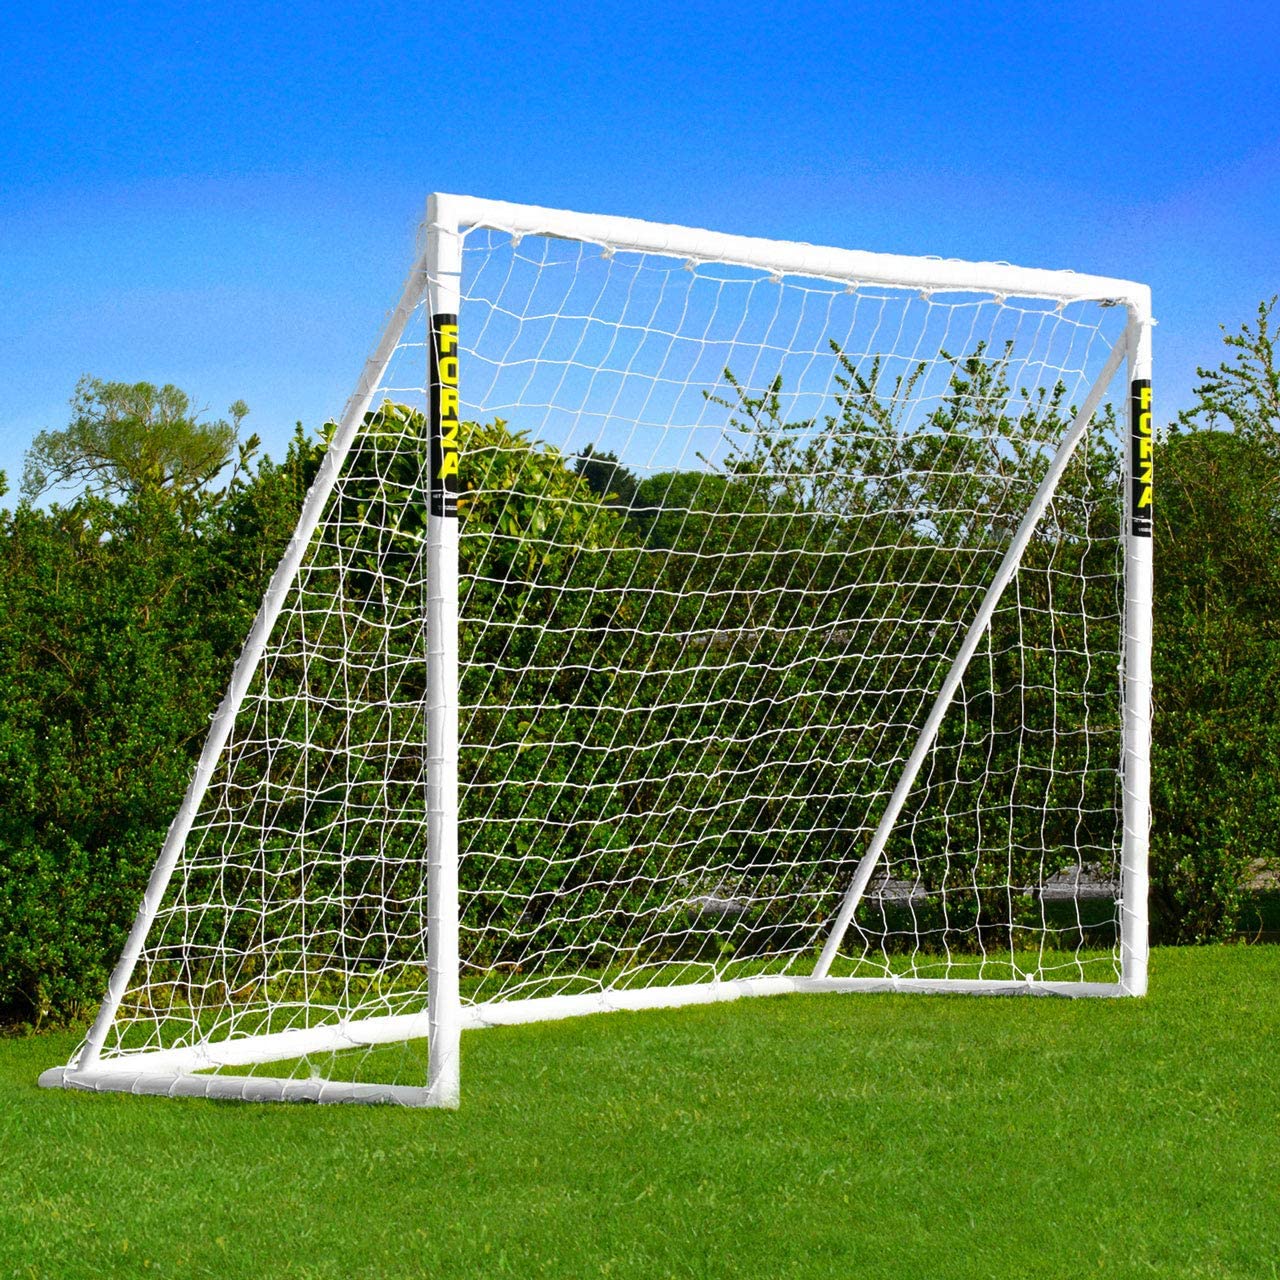 Soccer Score play mat Outdoor Sport Training Net Football Goal Goals Posts 